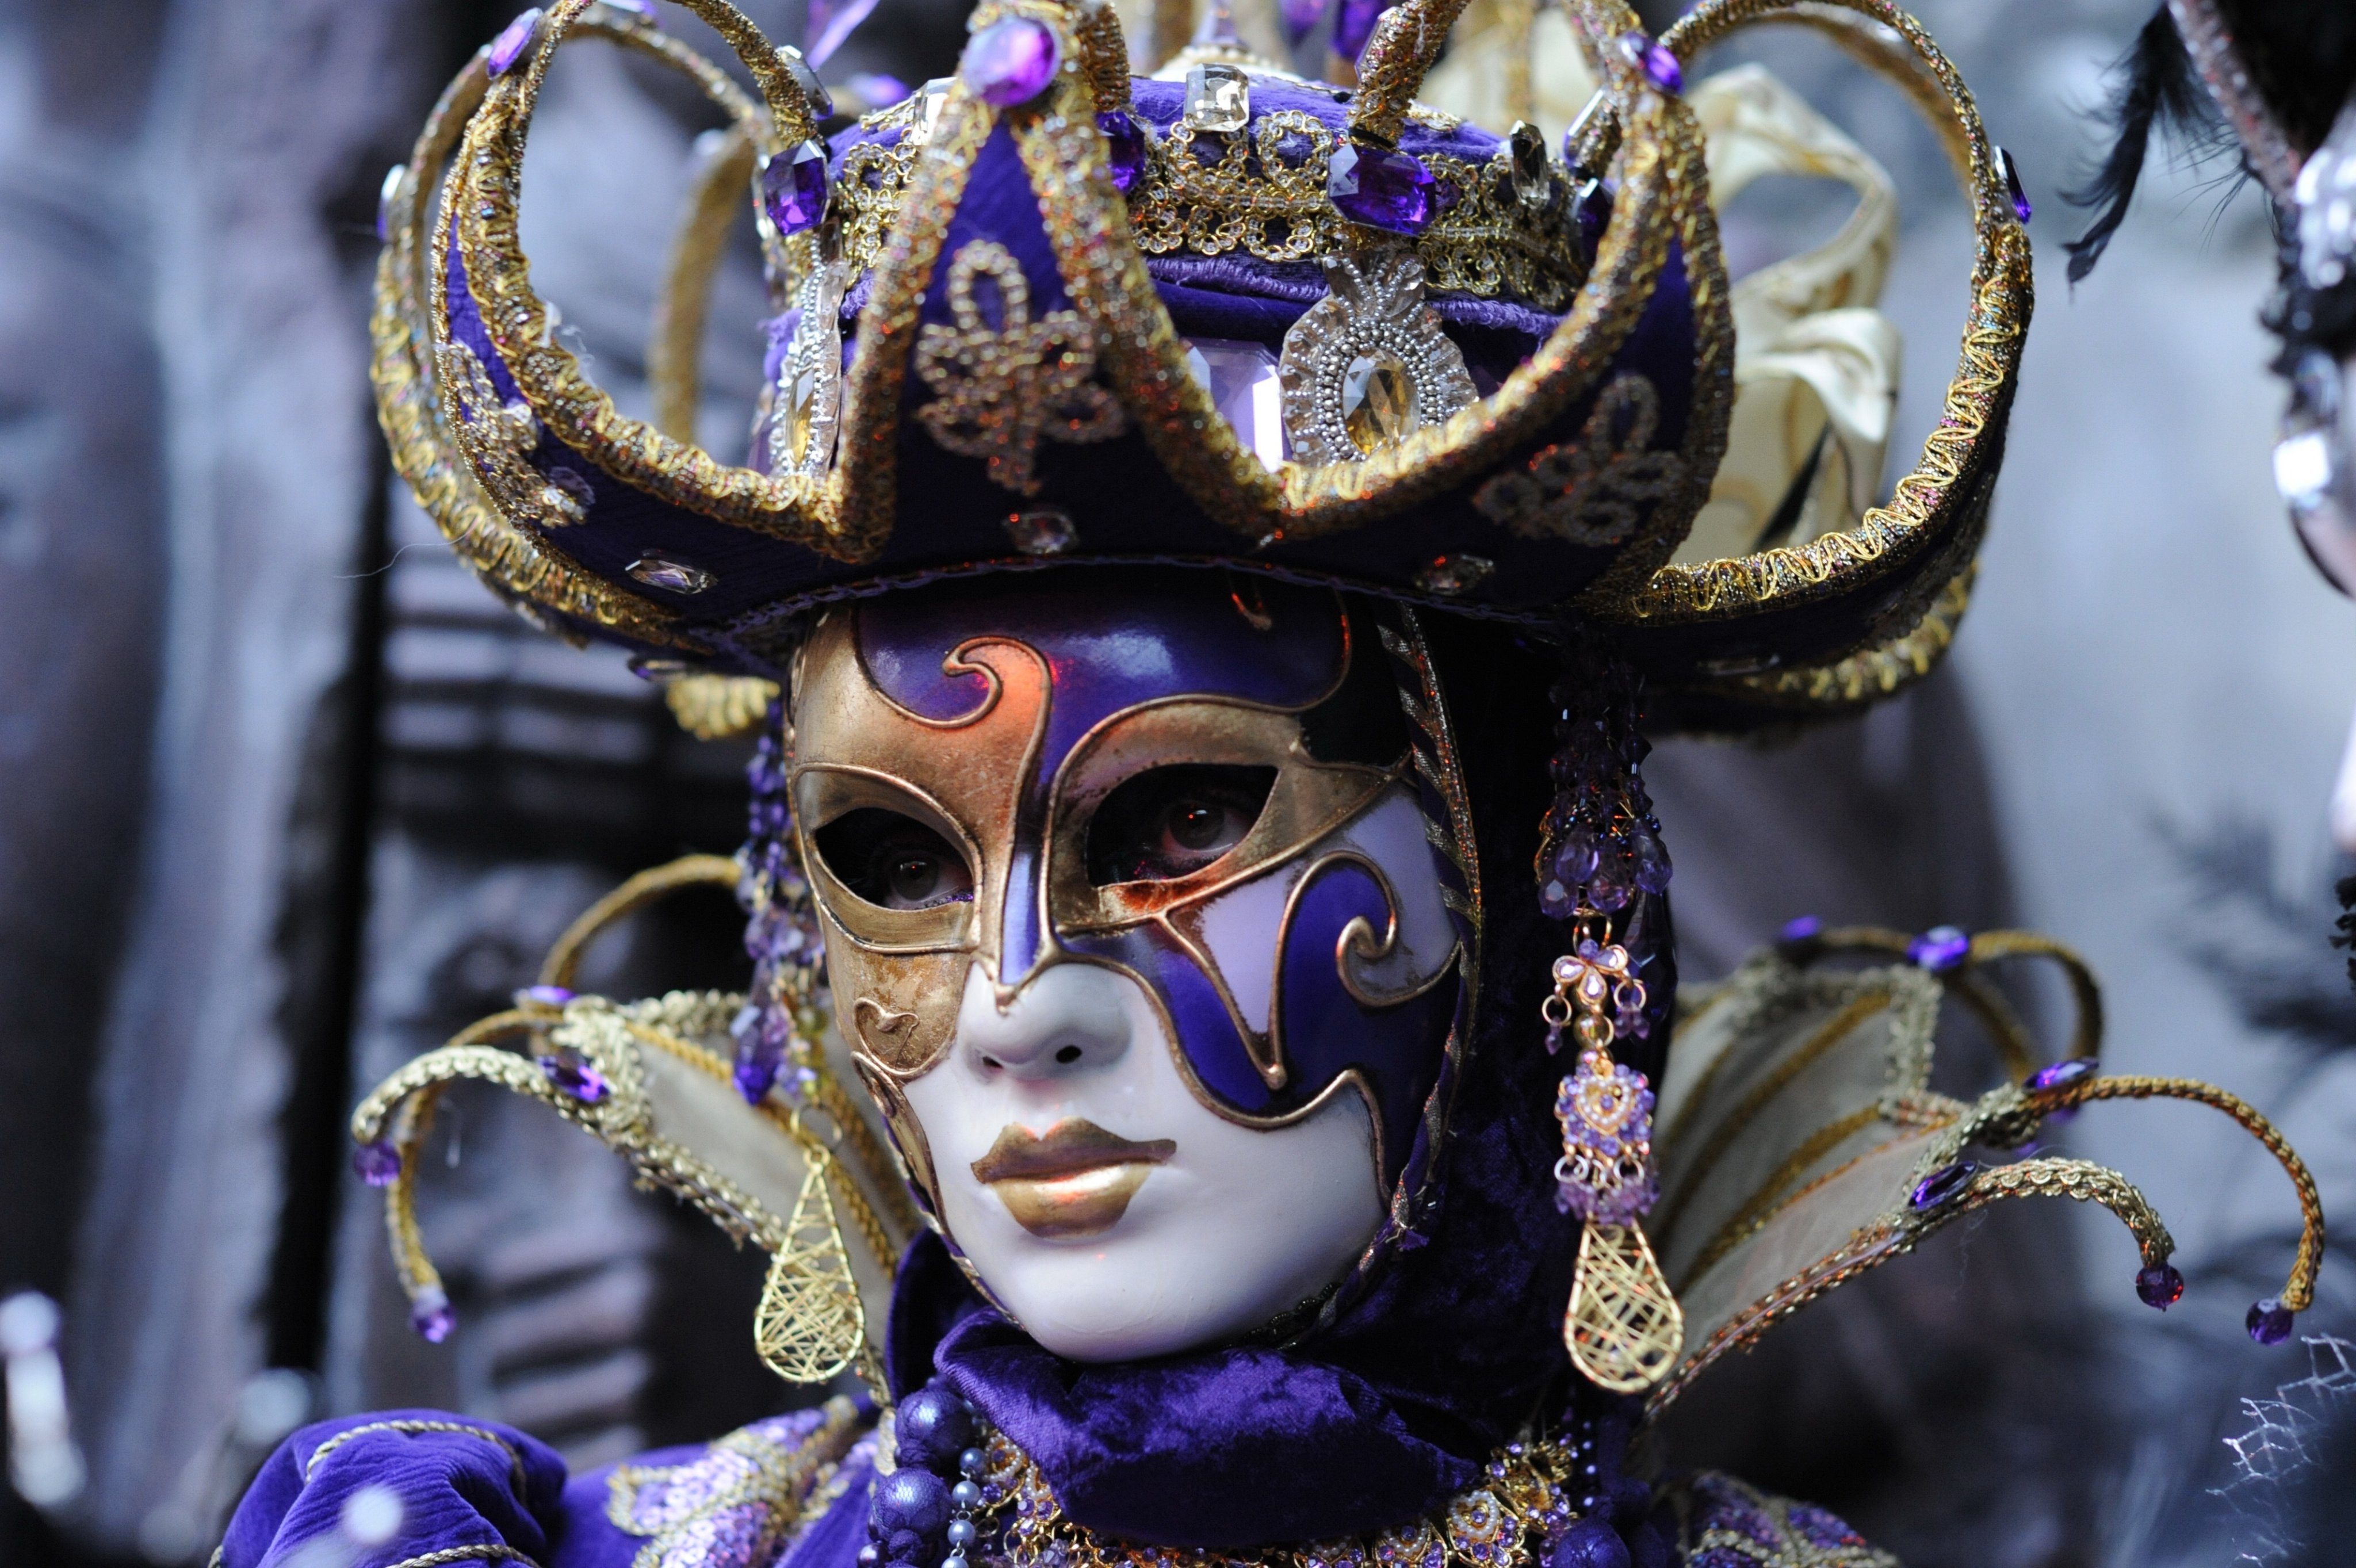 Participante del Carnaval de Venecia (Italia) con máscara.